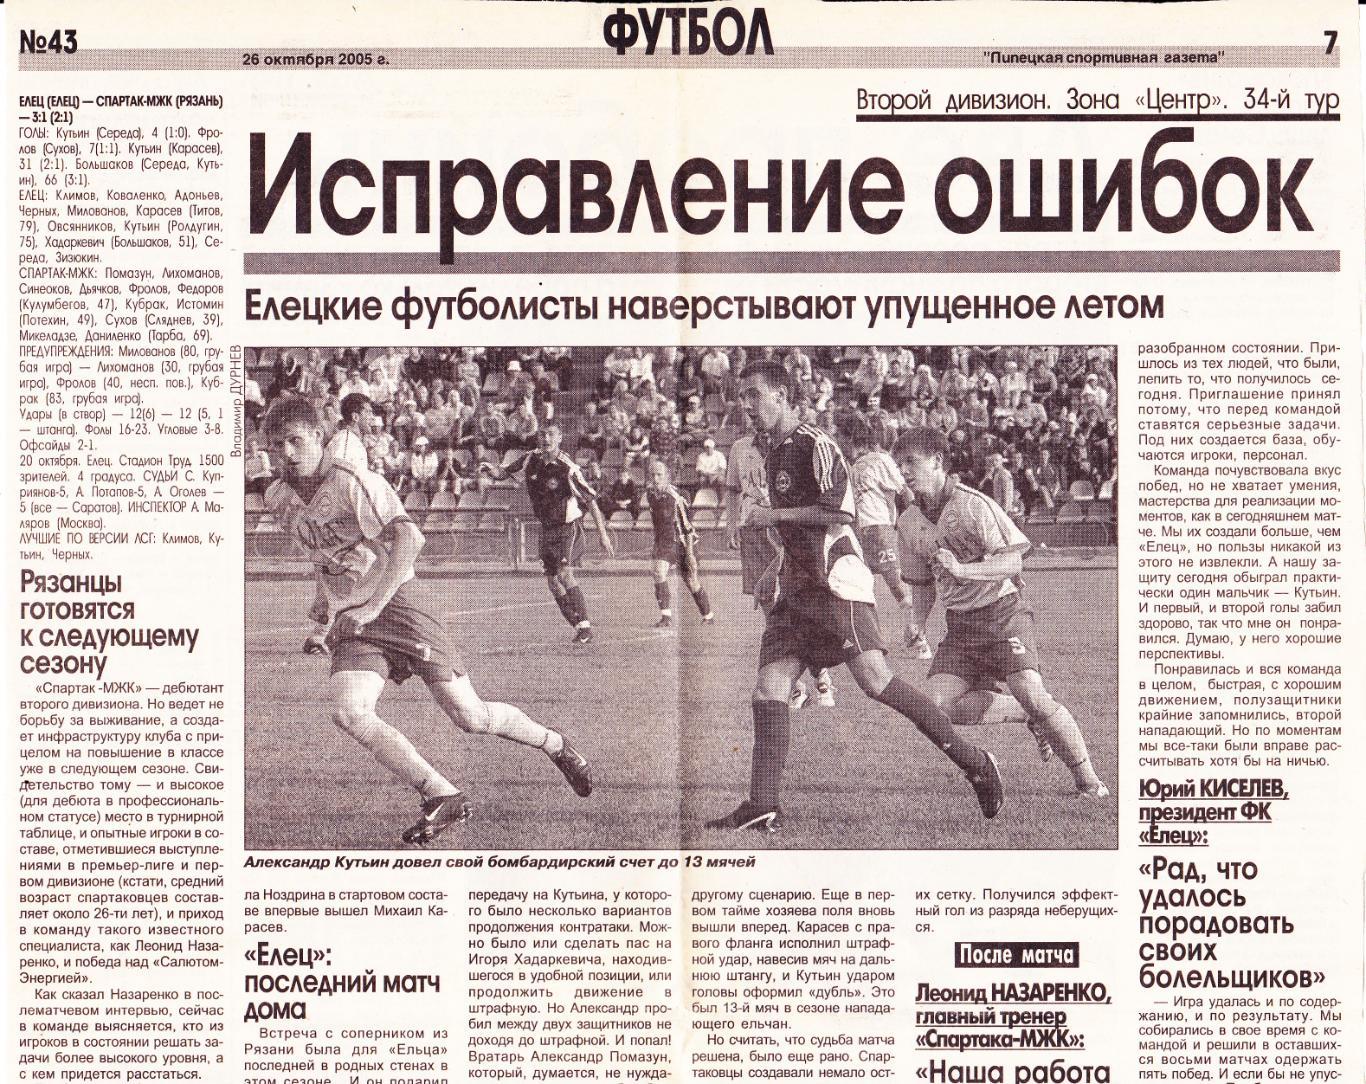 Отчет ФК Елец - Спартак-МХК (Рязань) 20.10.2005